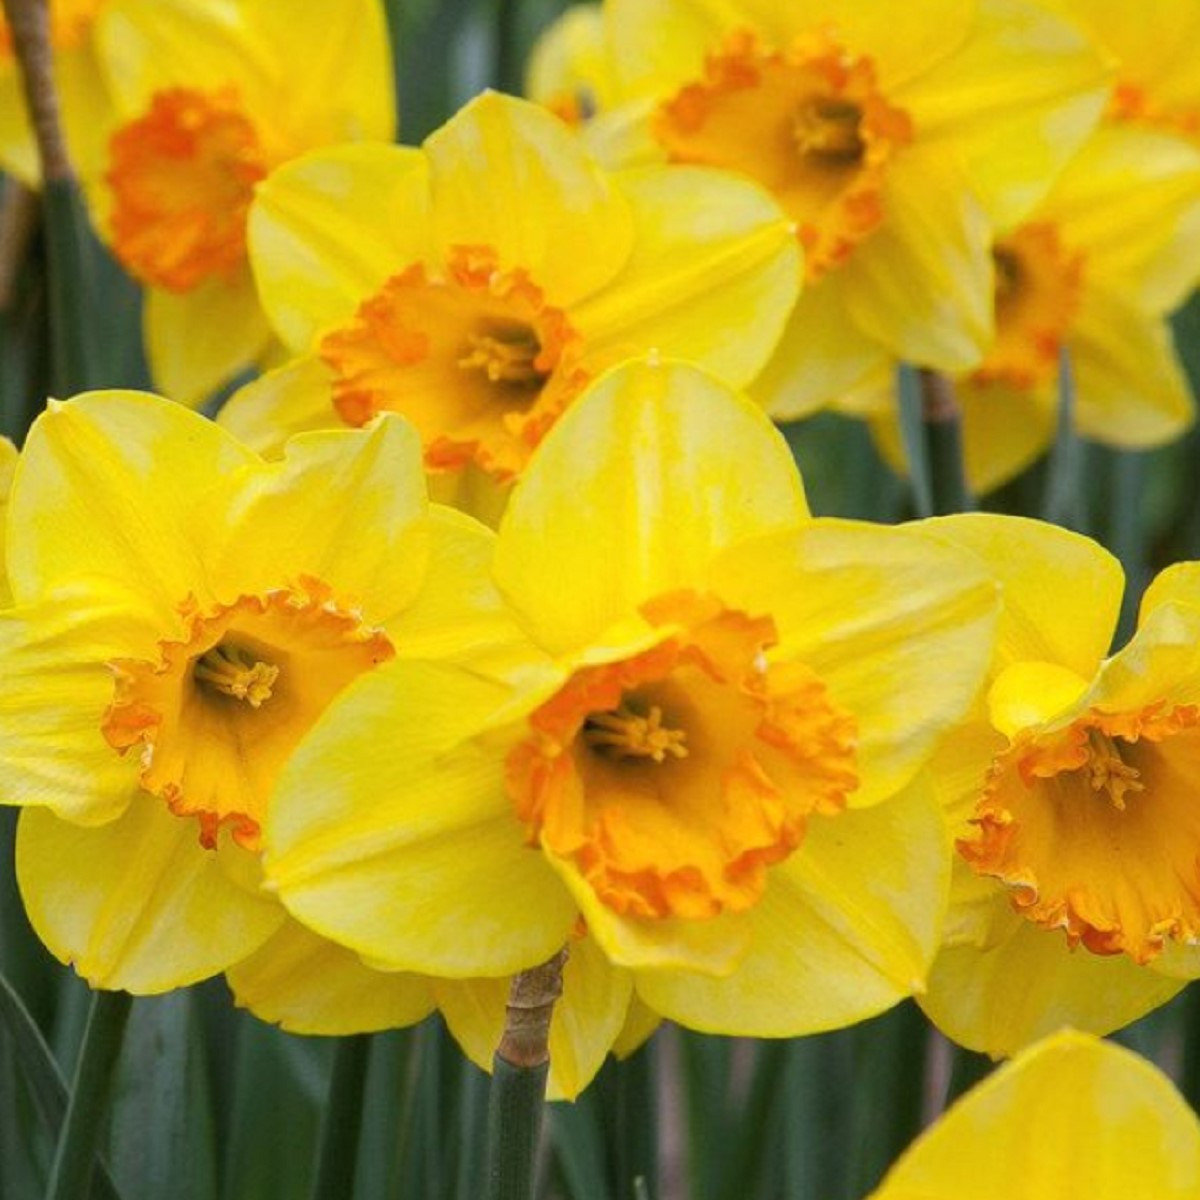 Narcis Early Flame - Narcissus - cibule narcisů  - 3 ks